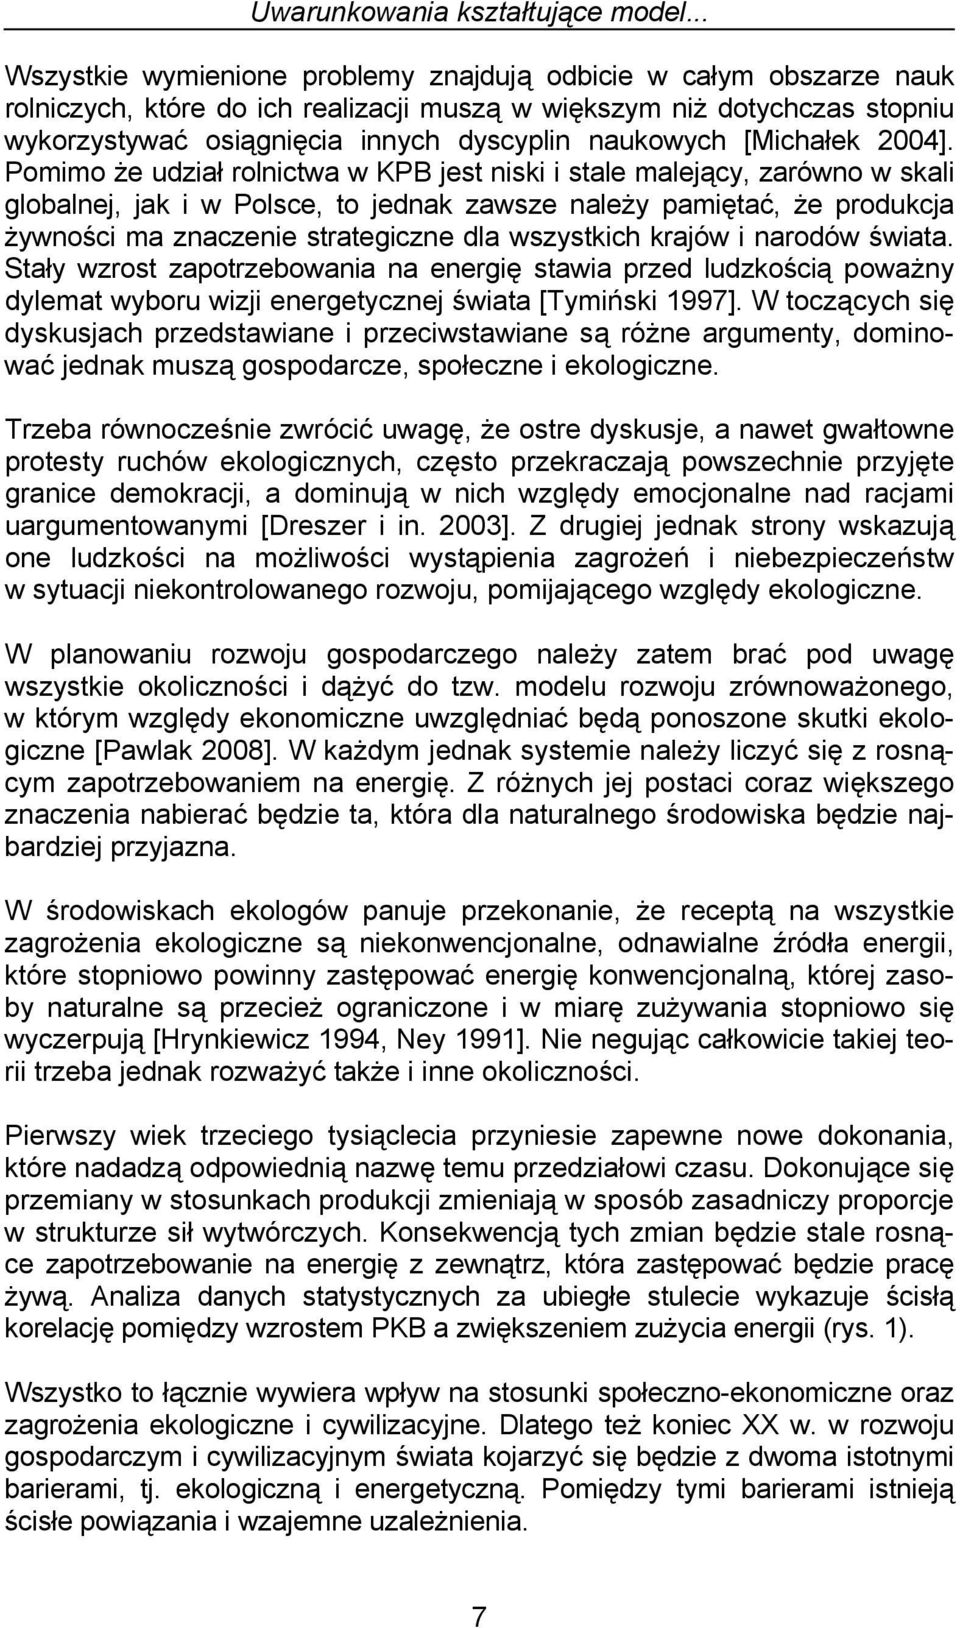 naukowych [Michałek 2004].